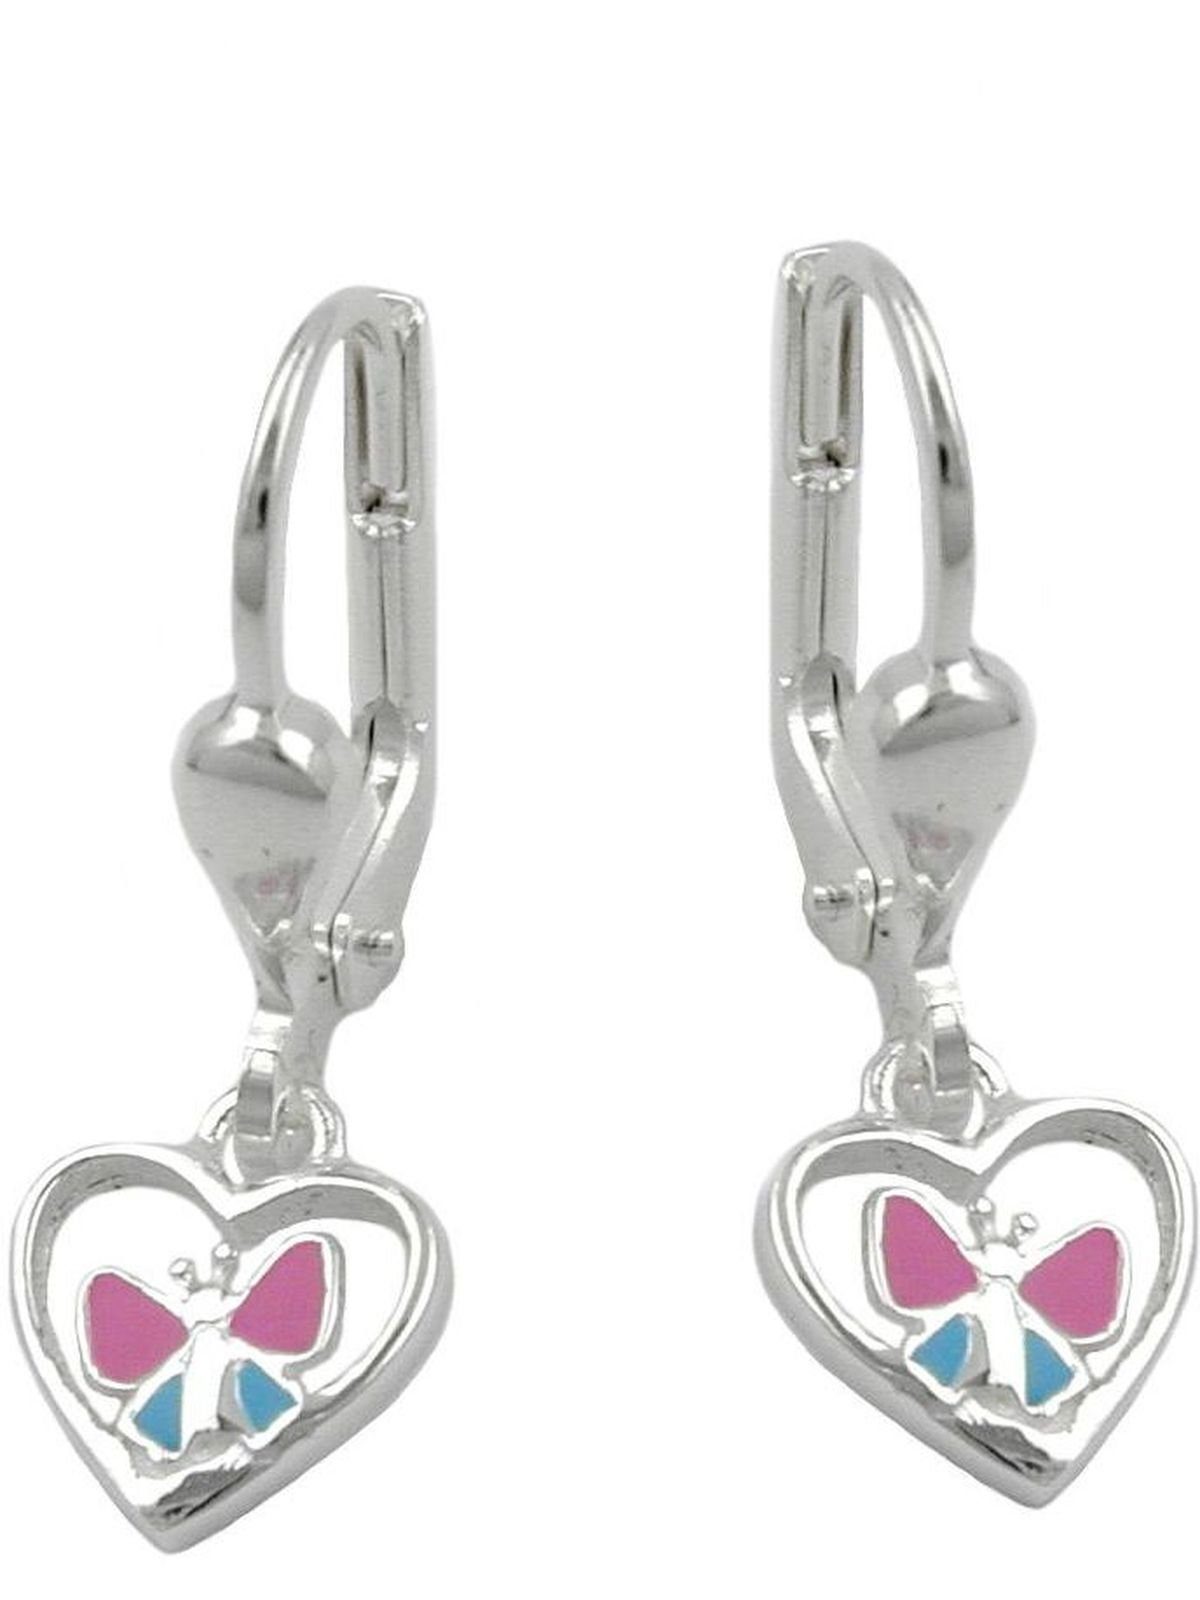 Ohrring pink mit 23x7mm hellblau Gallay Schmetterling lackiert Paar Herz Silber Ohrhänger 925